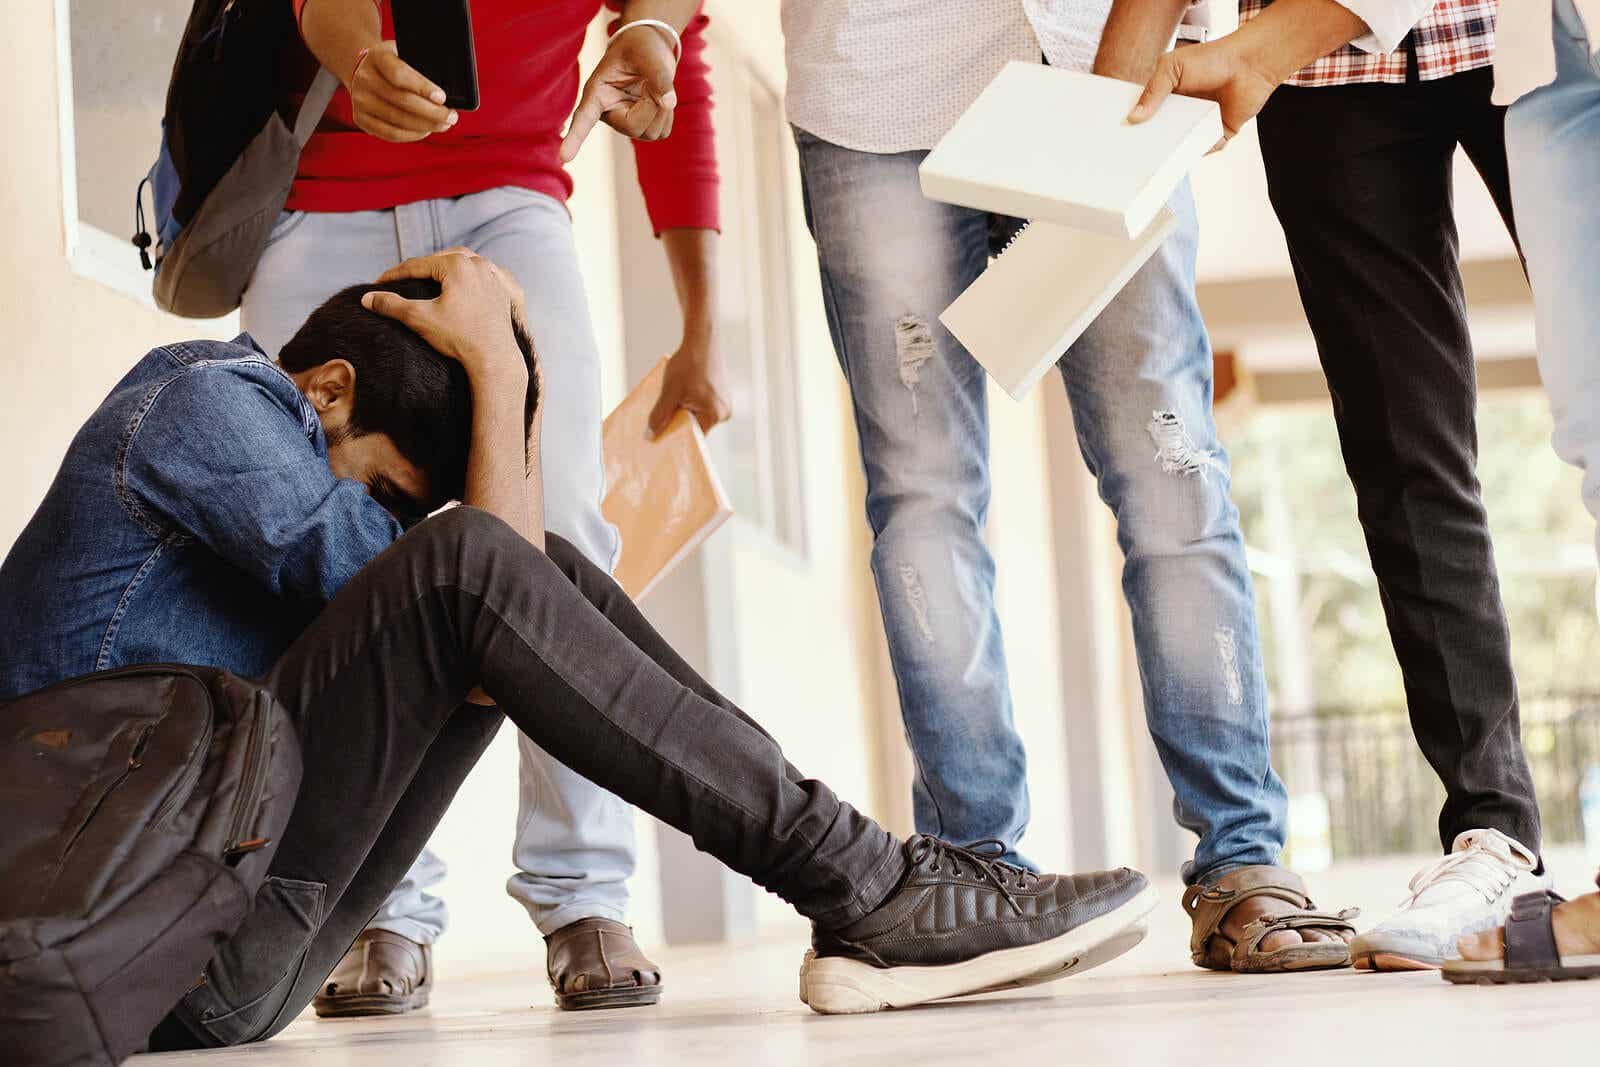 Nastoletni chłopak siedzący na podłodze w szkole, otoczony przez grupę łobuzów.